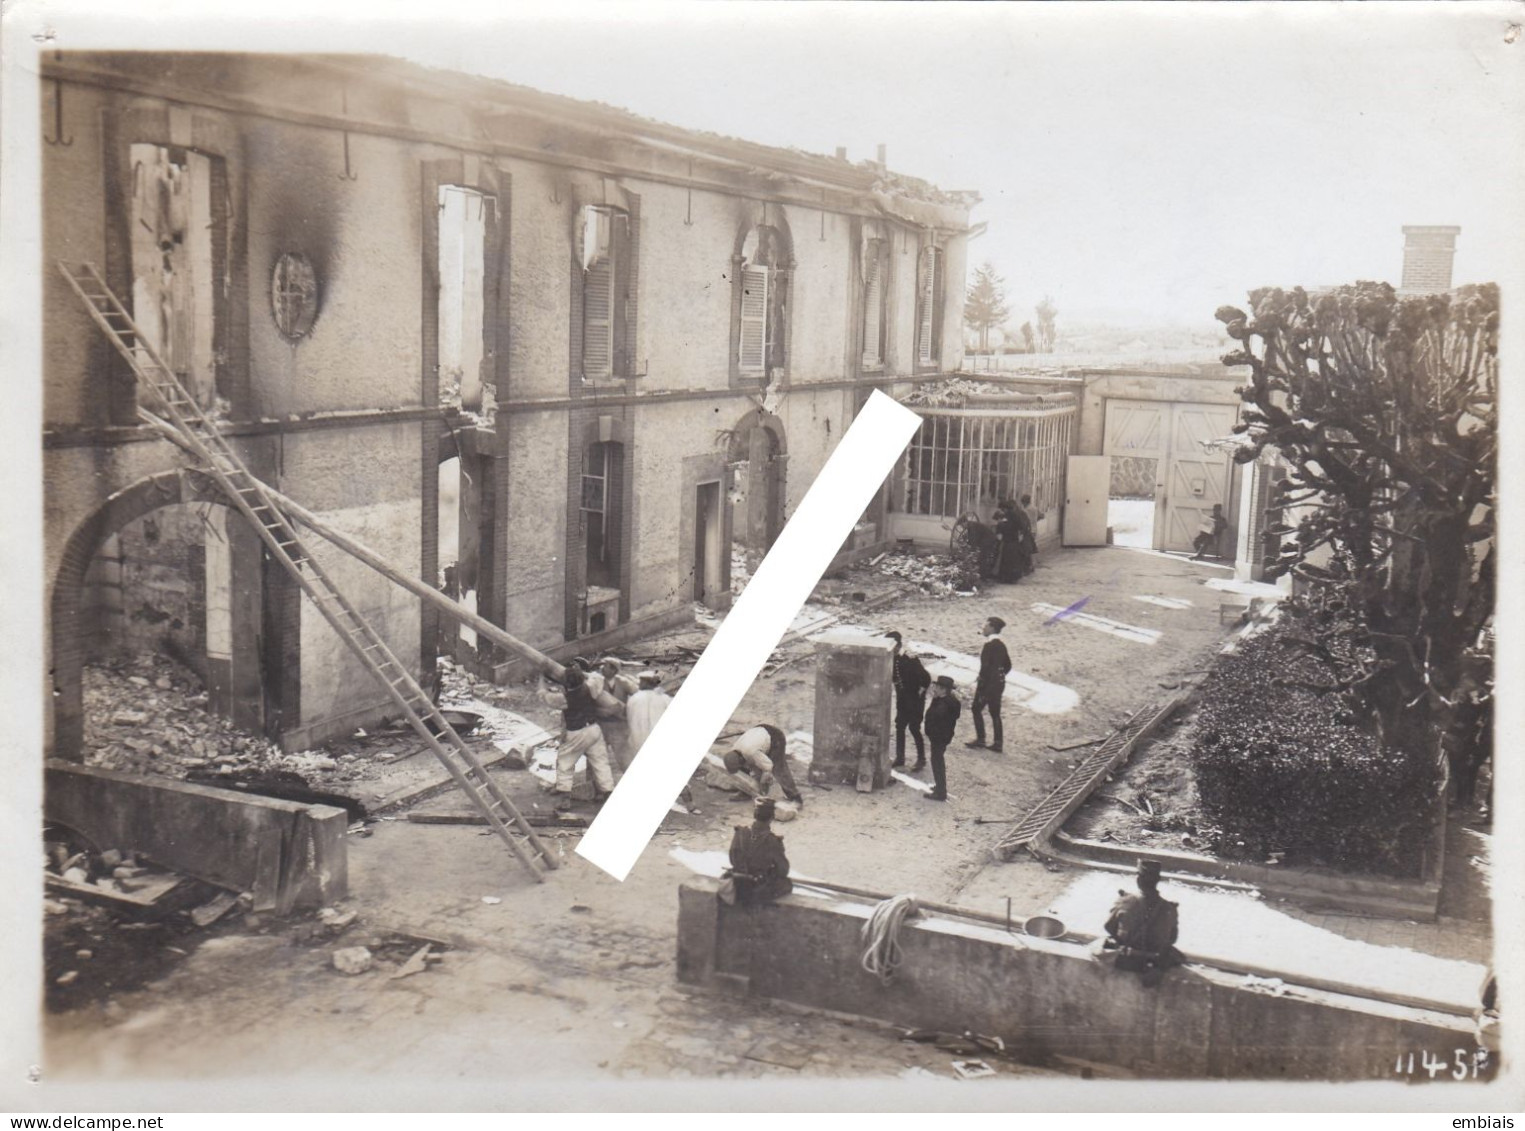 AY - Photo Originale De La Révolte Des Vignerons, Les Ruines De La Maison AYALA En Mars/ Avril 1911 - Lieux